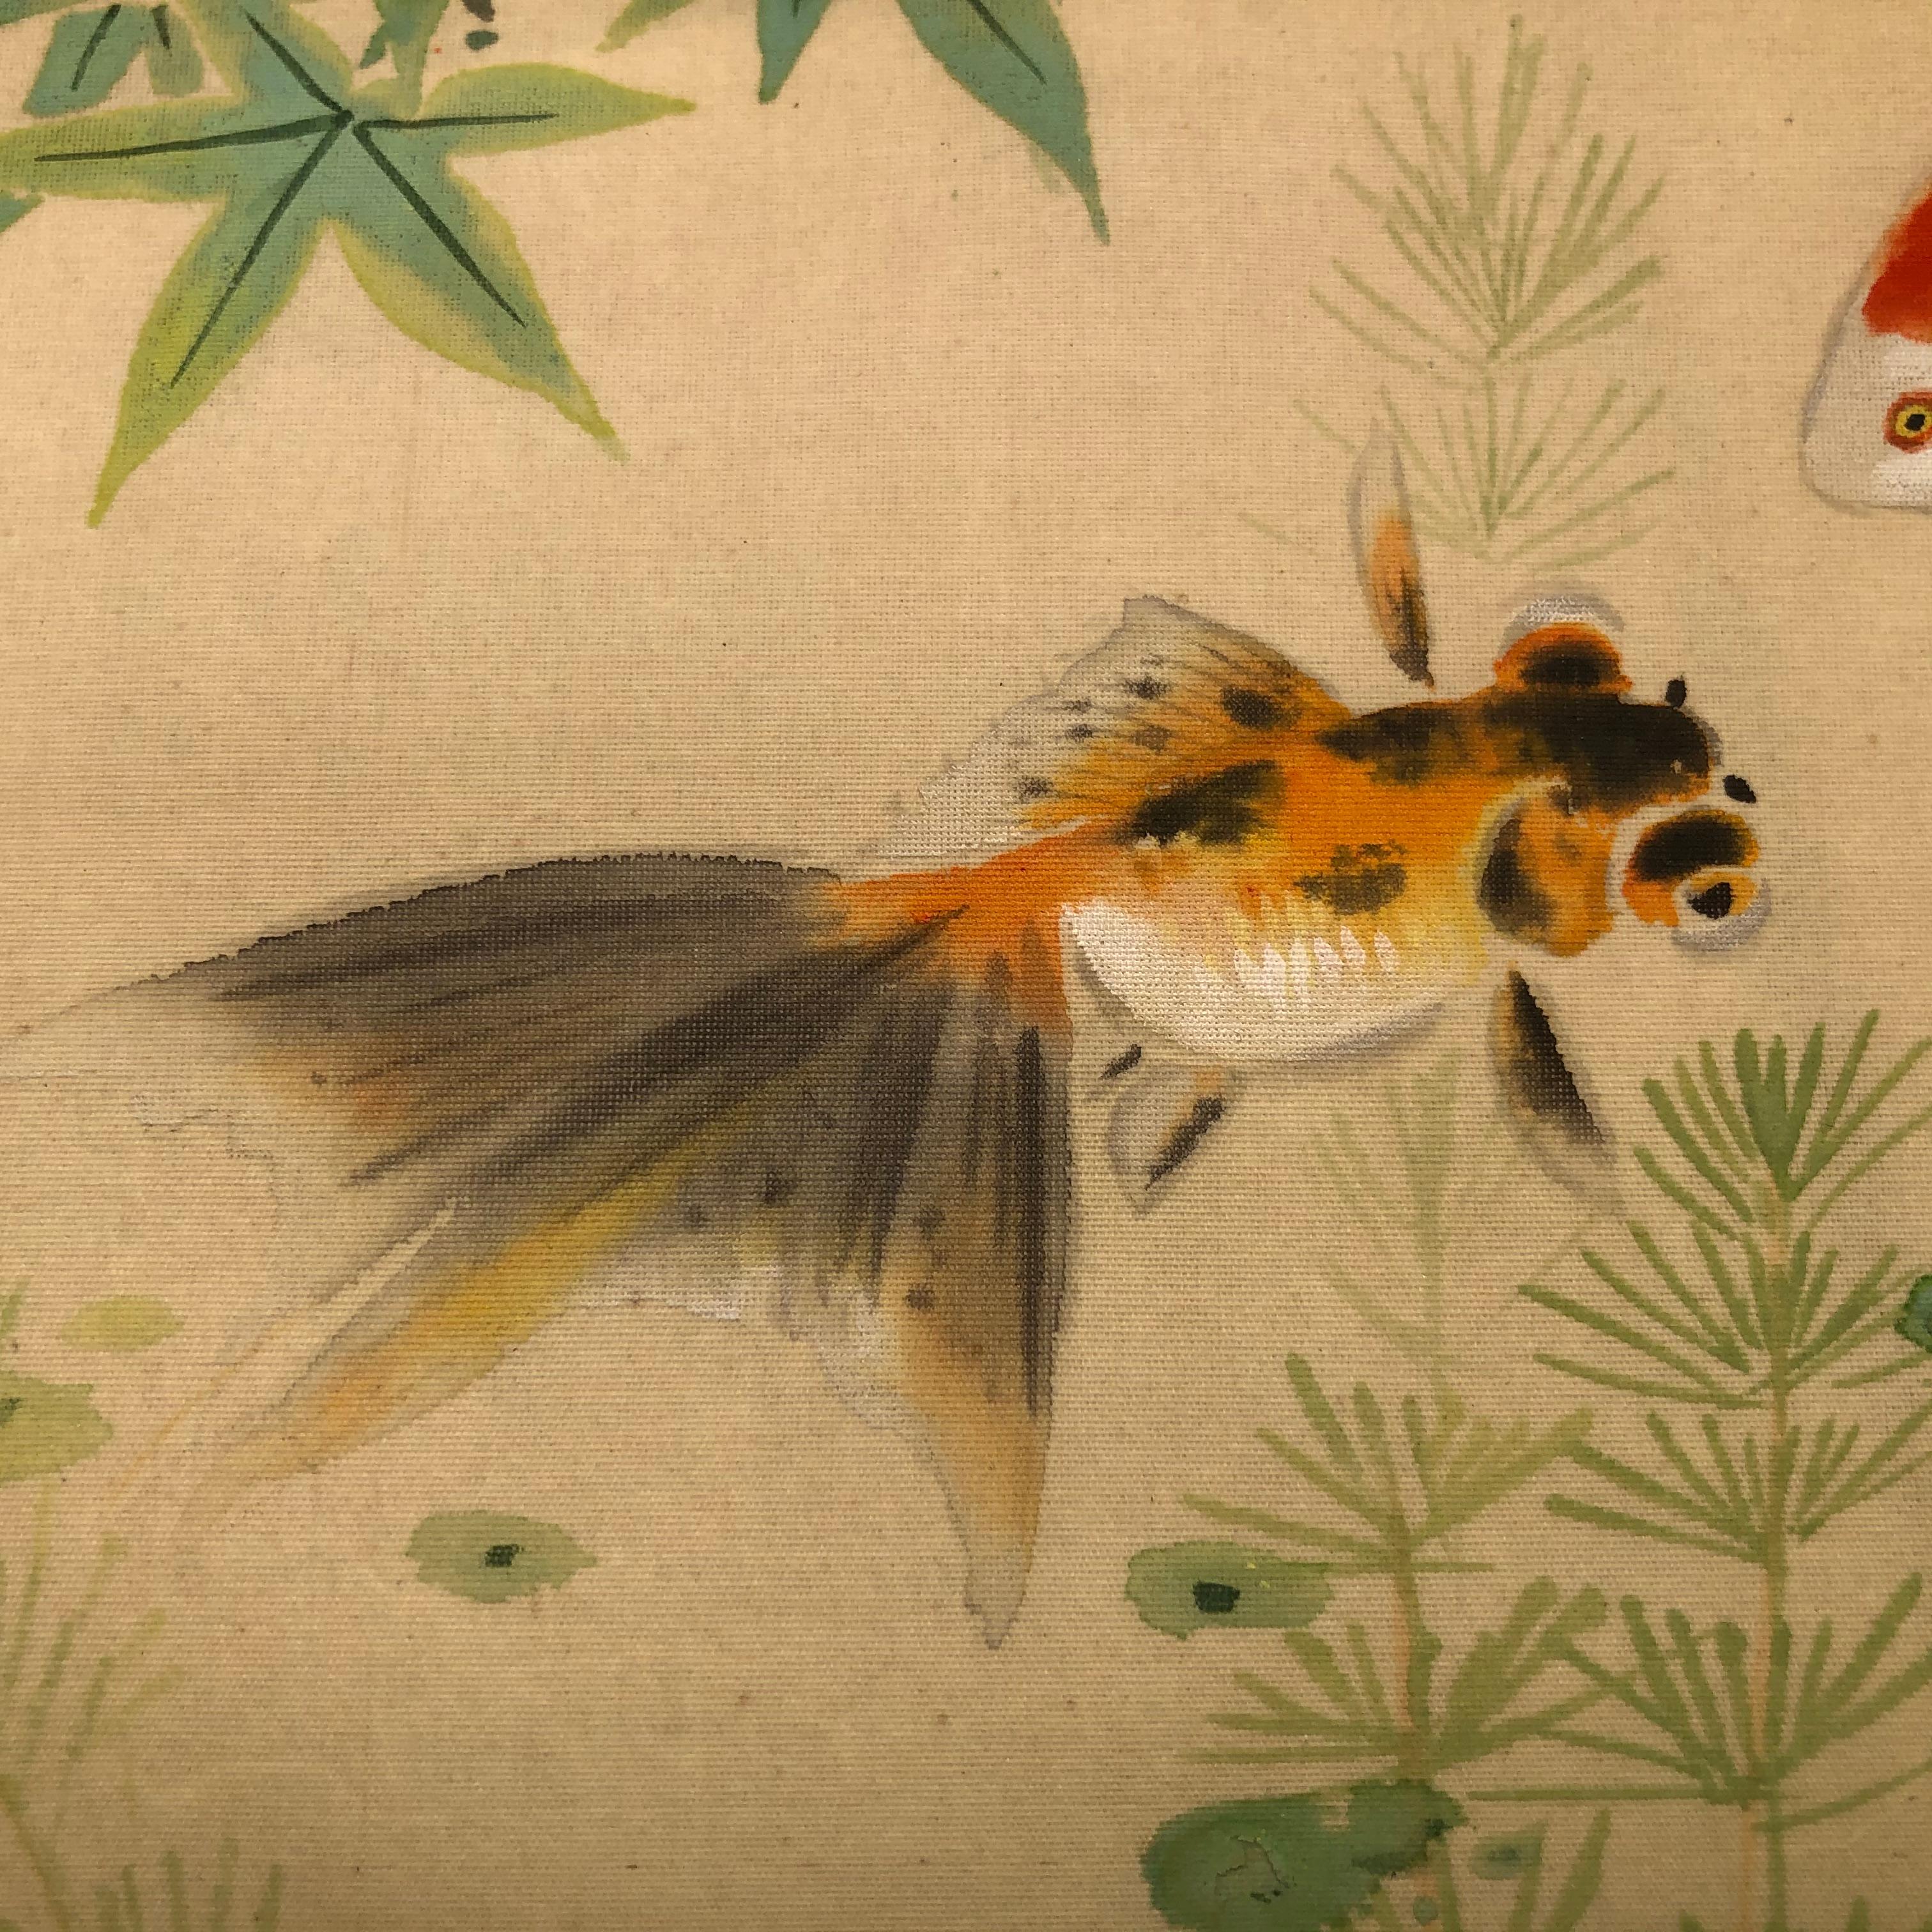 Von unserer jüngsten japanischen Akquisition Reisen

Eine schöne und überzeugende japanische antike handgemalte Gemälde von drei goldenen Fischen - bereit:: in Ihrem Lieblings-Rahmen zu montieren und stolz zu zeigen oder als ein einzigartiges